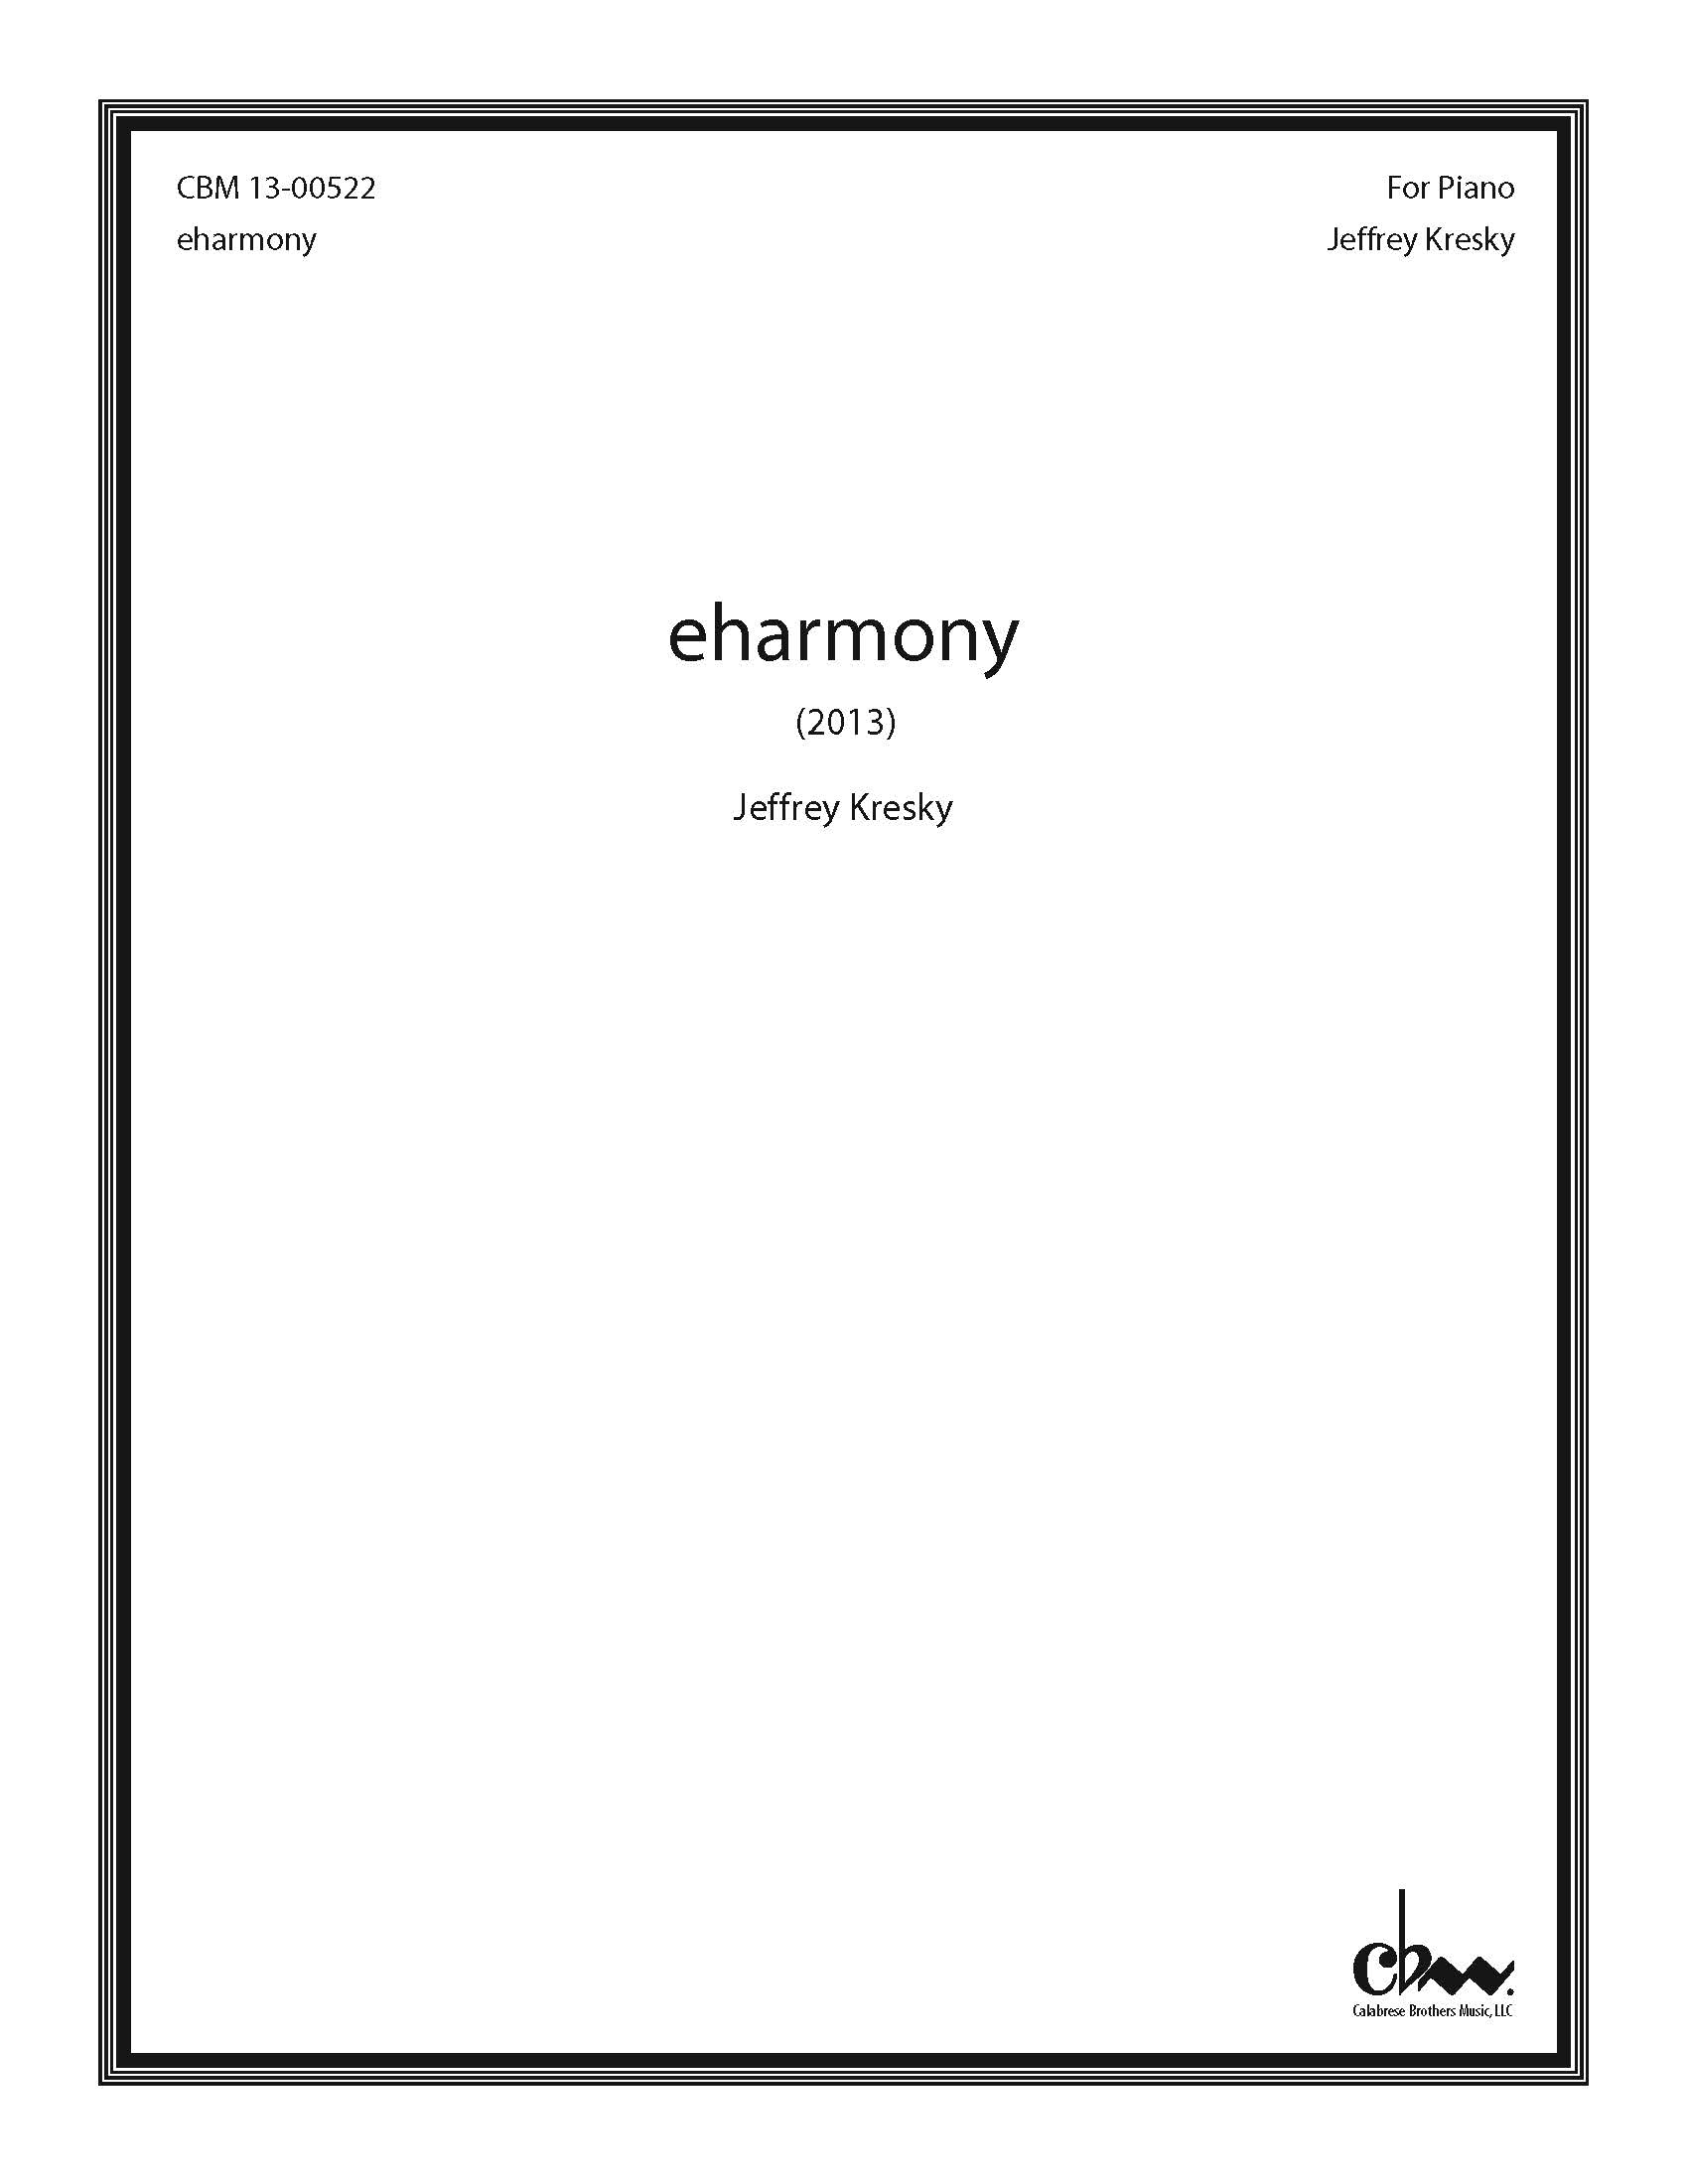 eharmony for Piano